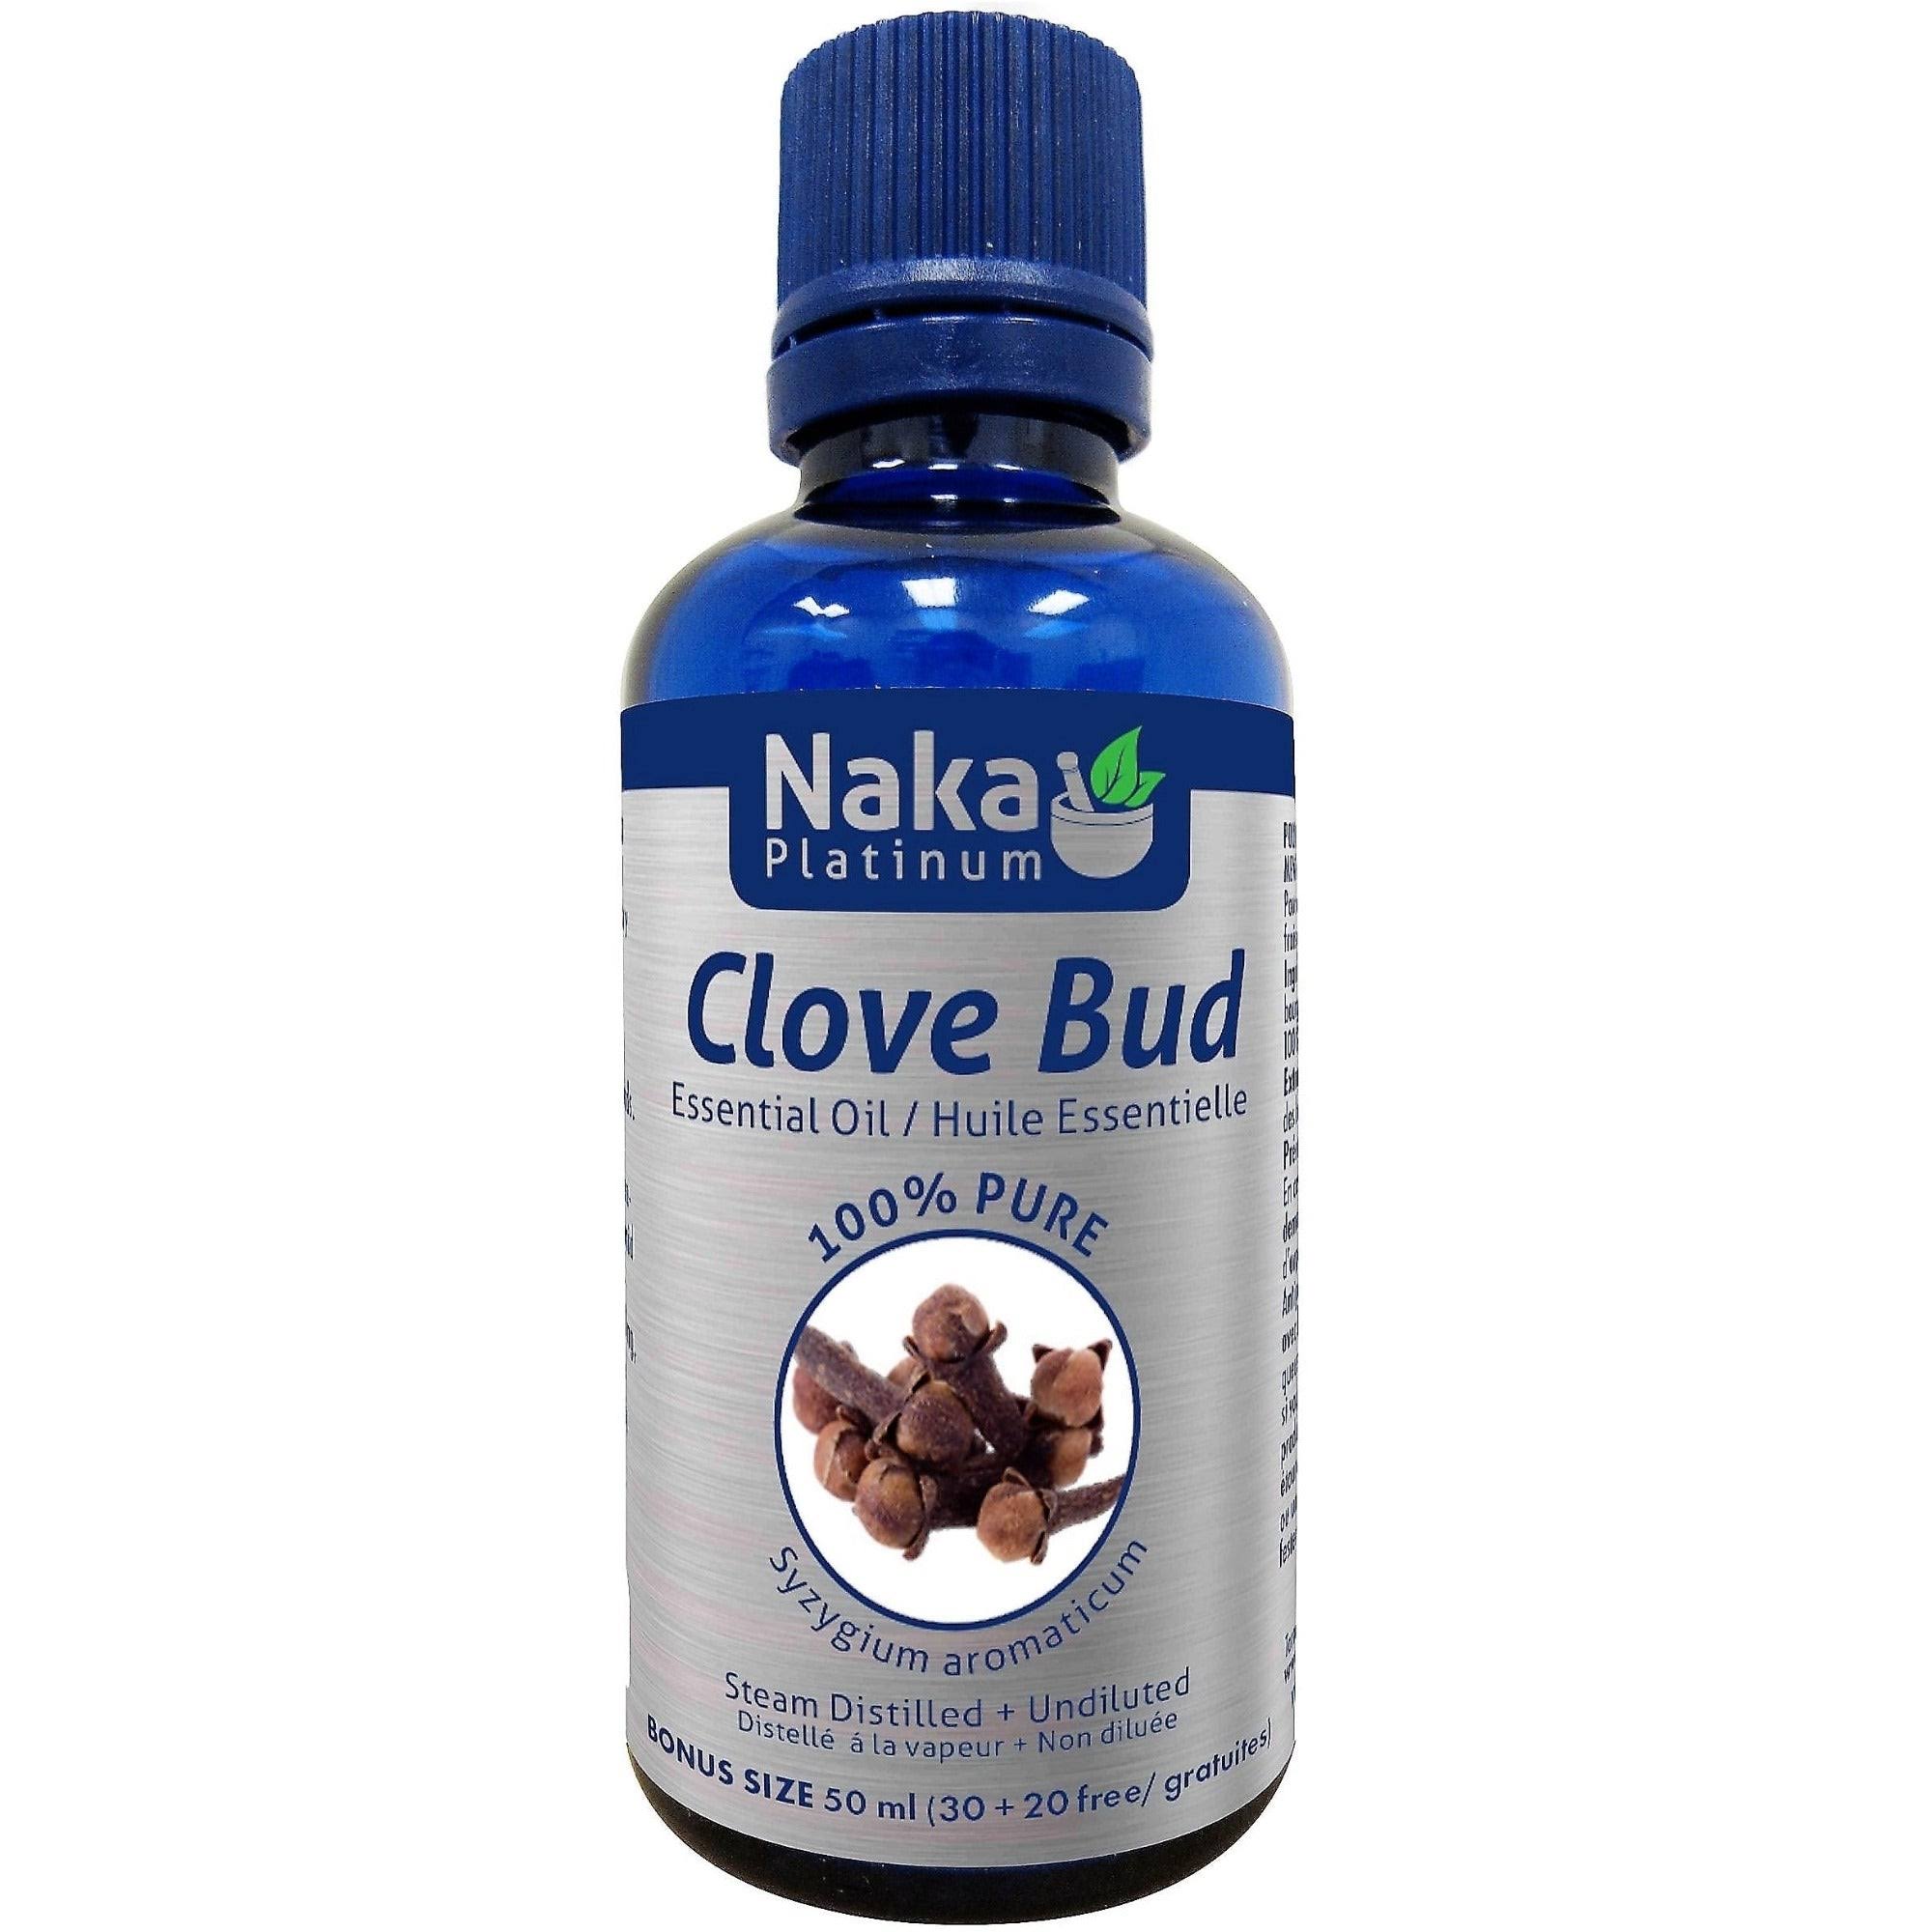 Naka 100% Pure Clove Bud Essential Oil - 50ml + Bonus